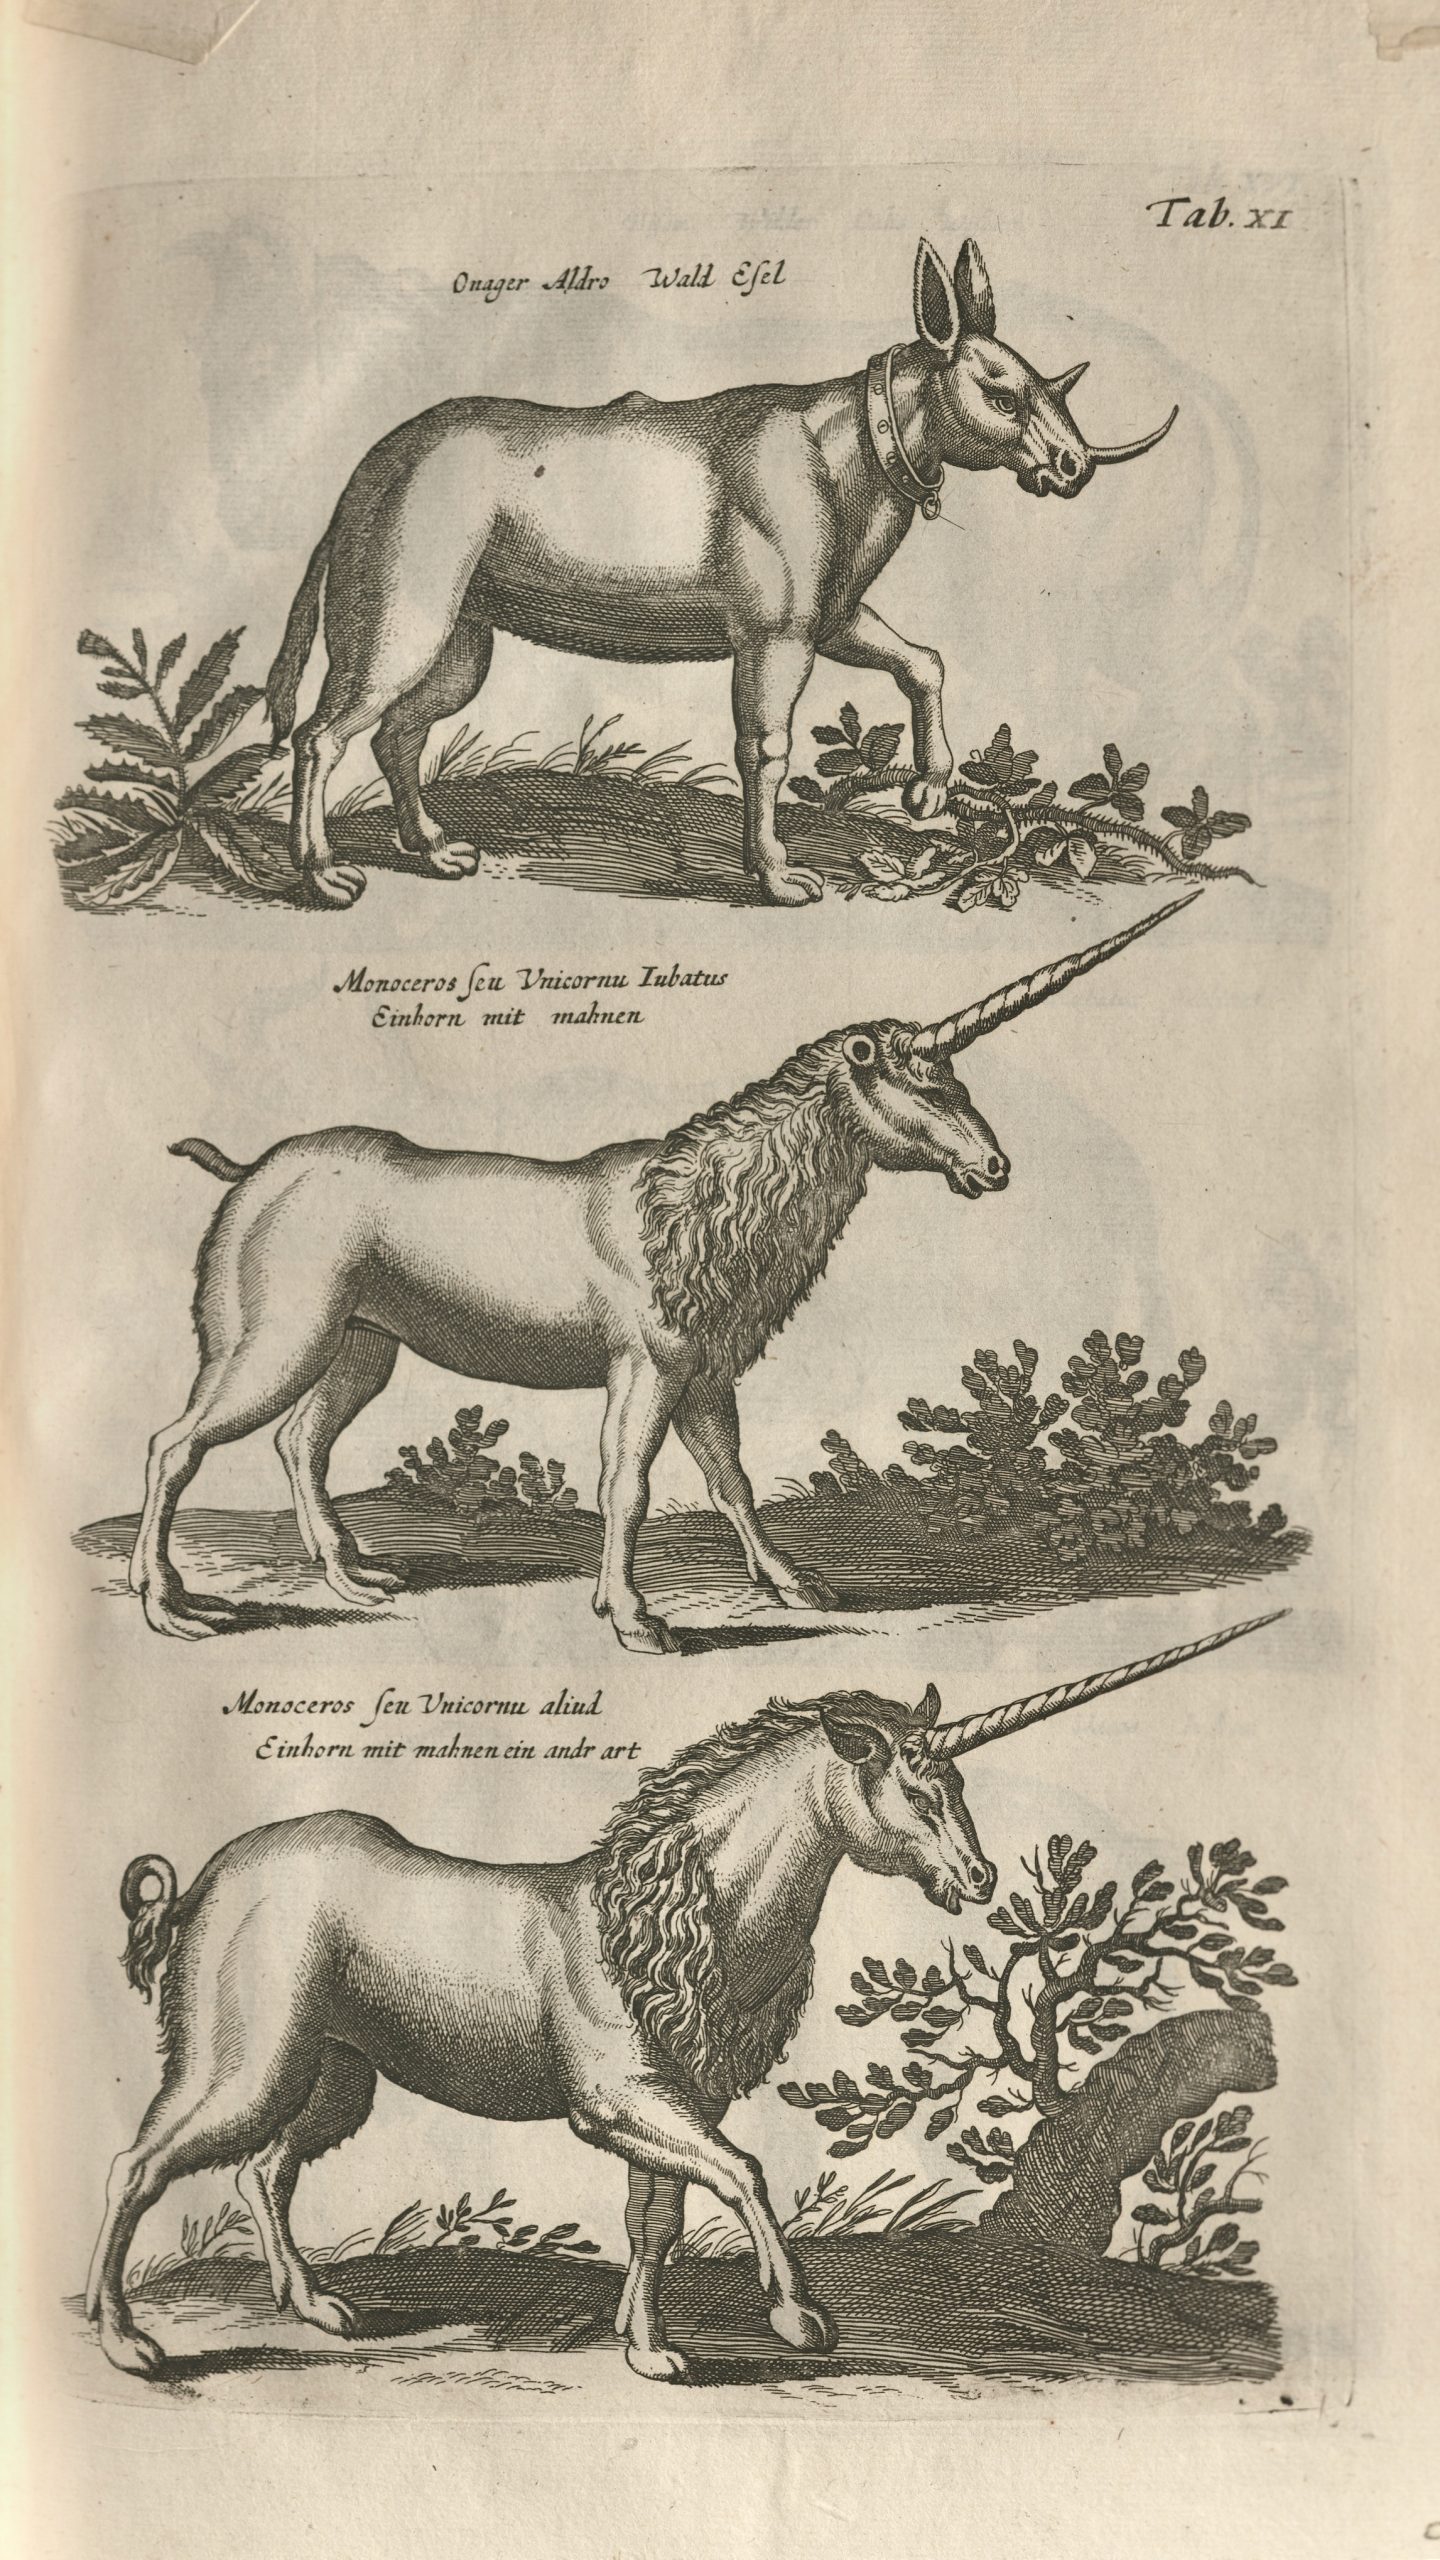 Unicorns in Historiae Naturalis